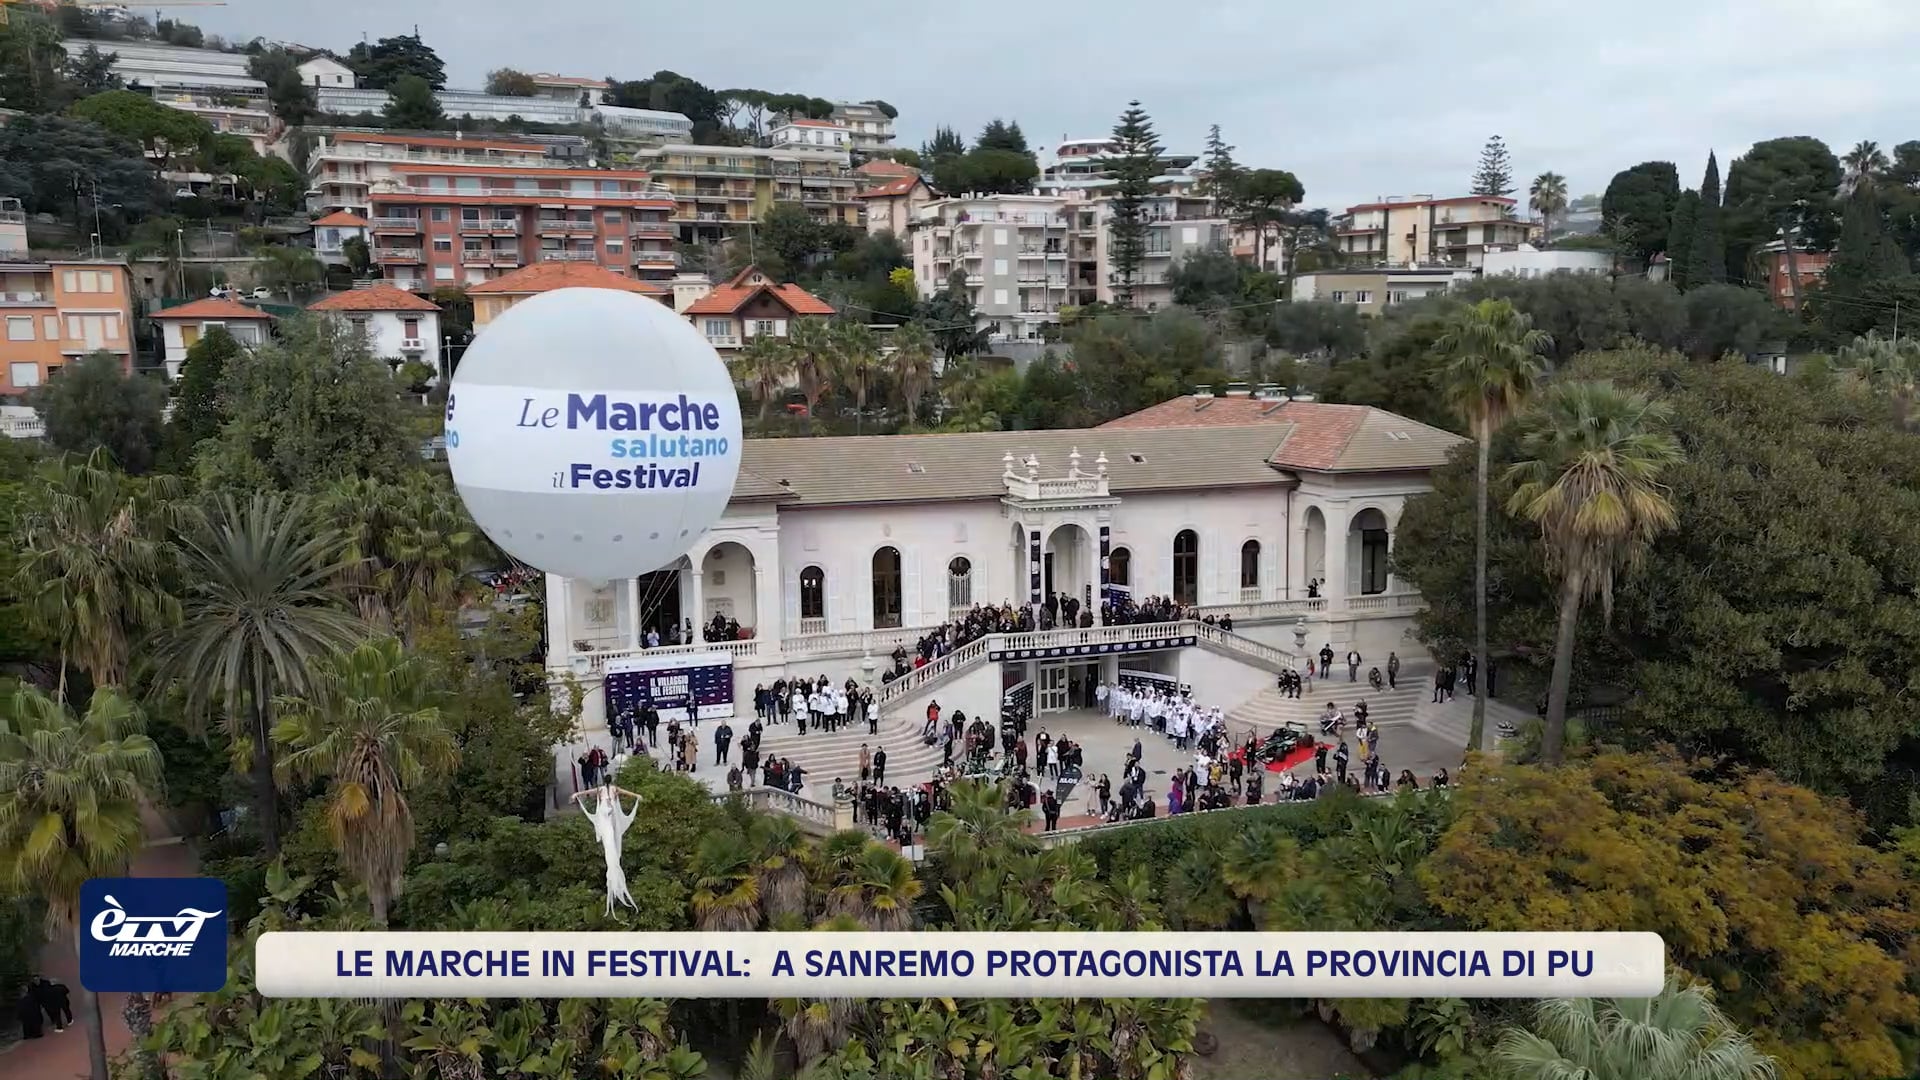 La Marche in Festival. A Sanremo protagonista la provincia di Pesaro e Urbino